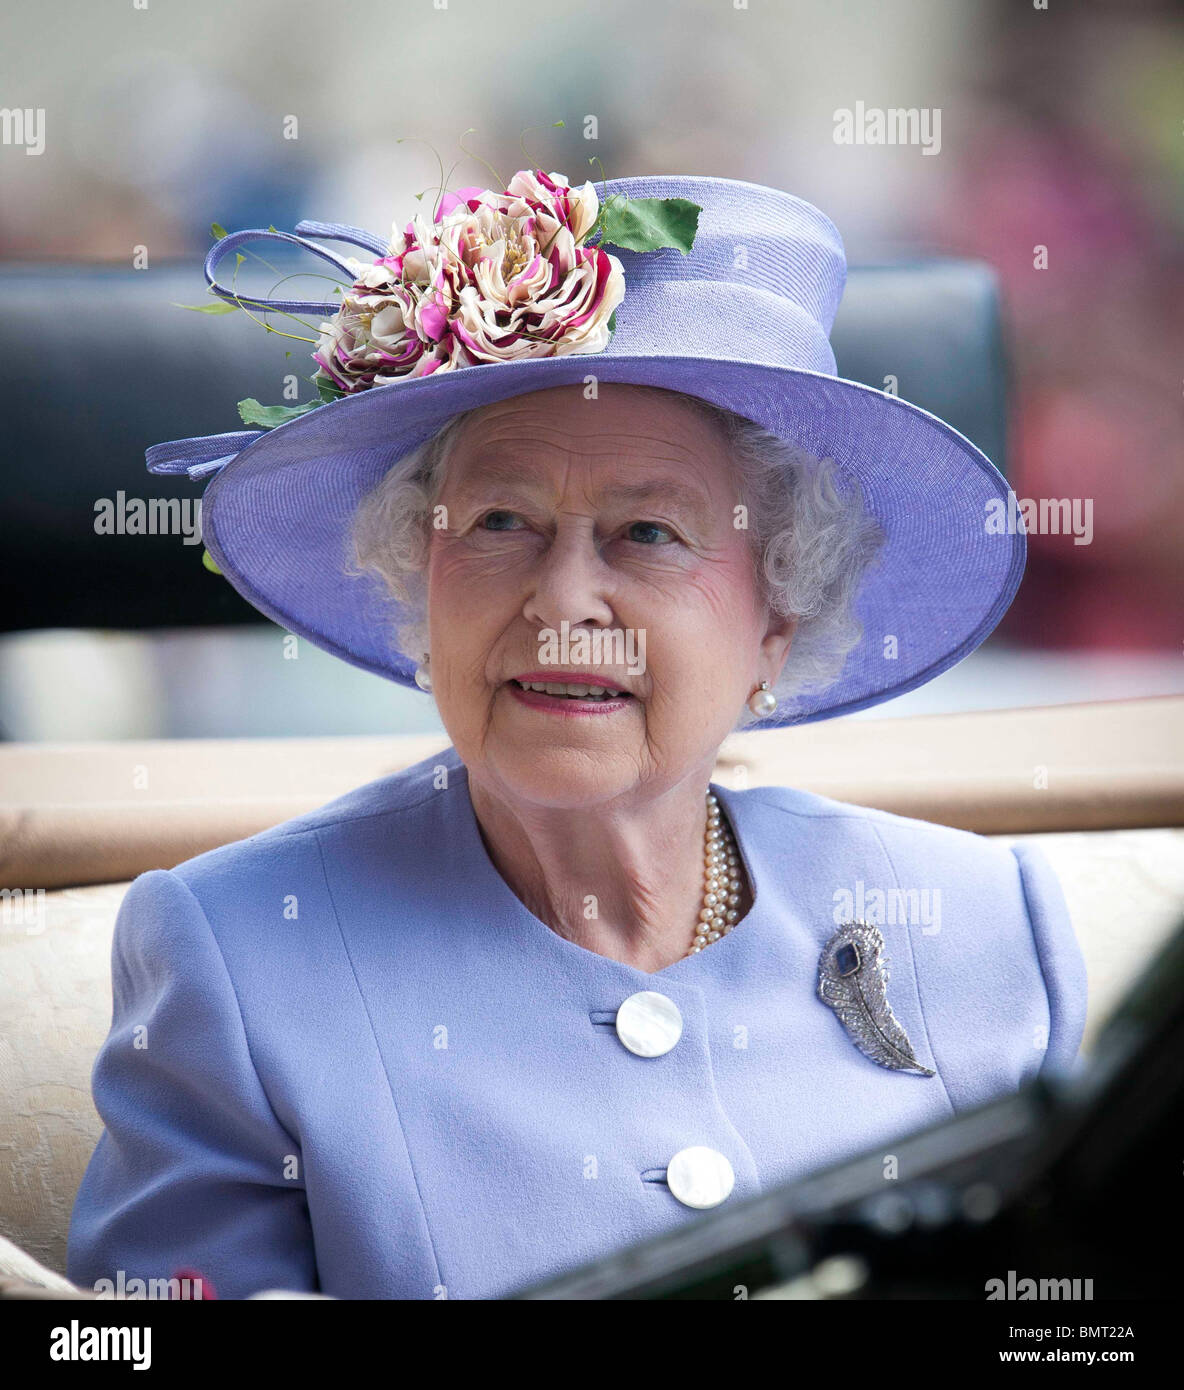 Die britische Königin Elizabeth II. Tagung des Royal Ascot 2010 Pferd Rennen Stockfoto